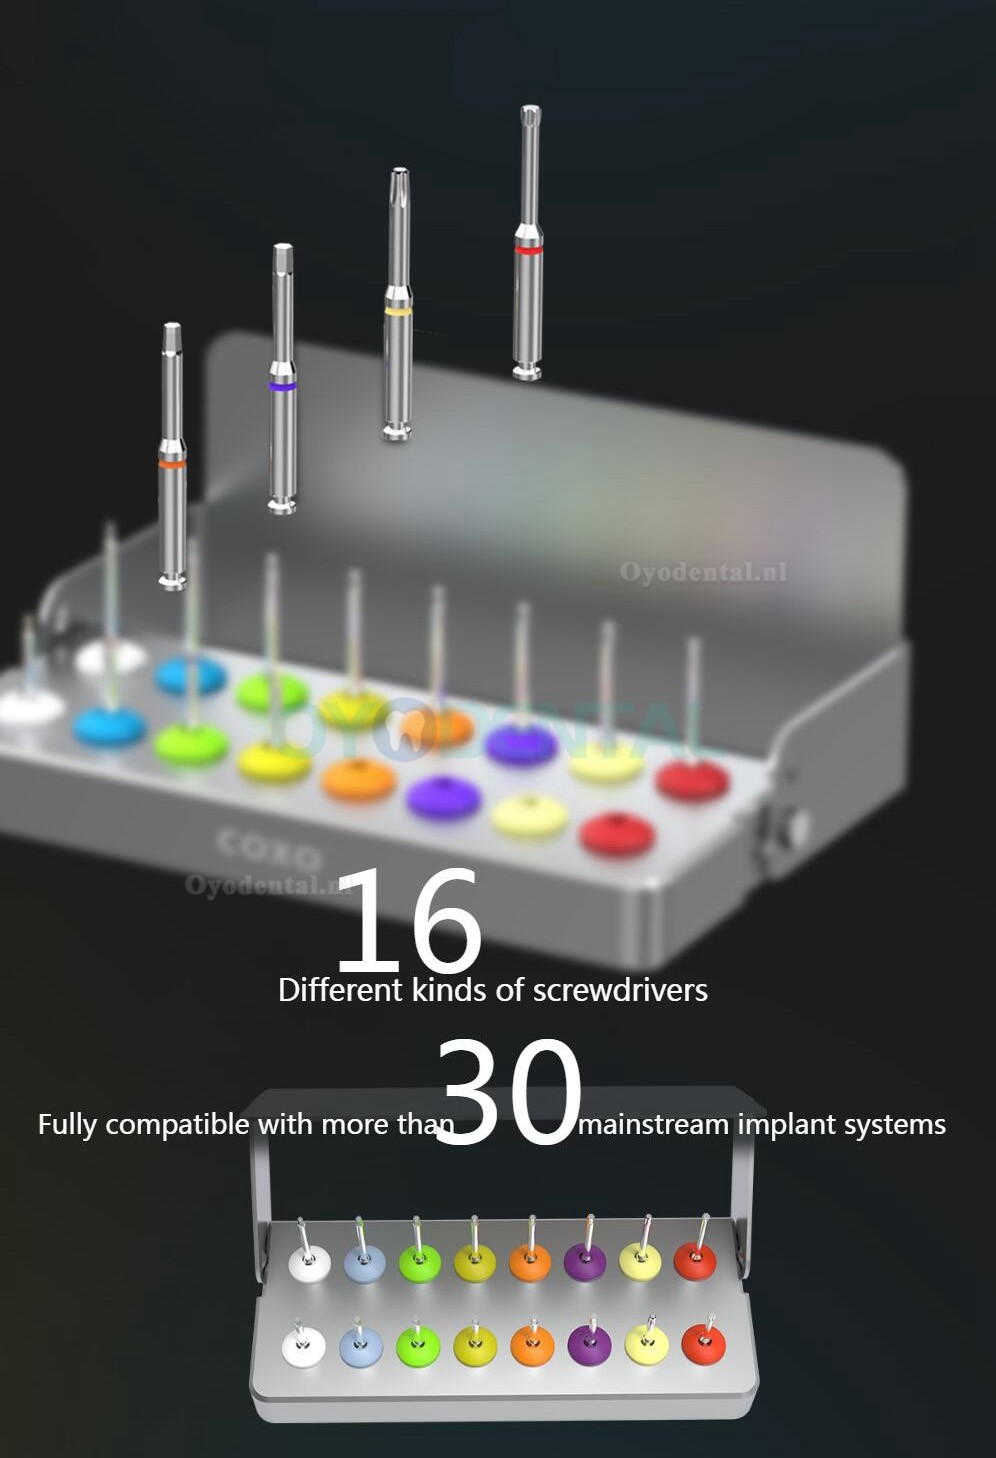 YUSENDNET COXO C-TW1 Implantaat momentsleutel Universele implantaat momentsleutelset met 16 schroevendraaiers